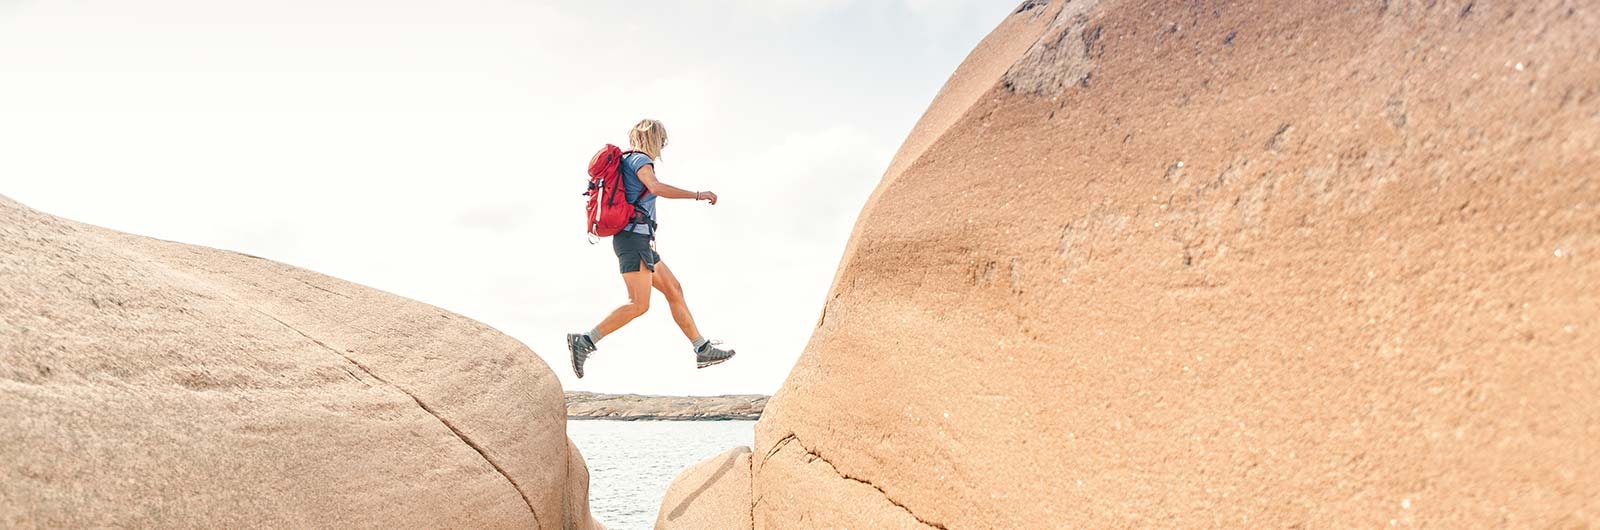 Vandrare hoppar mellan klippor på Bohusläns kust